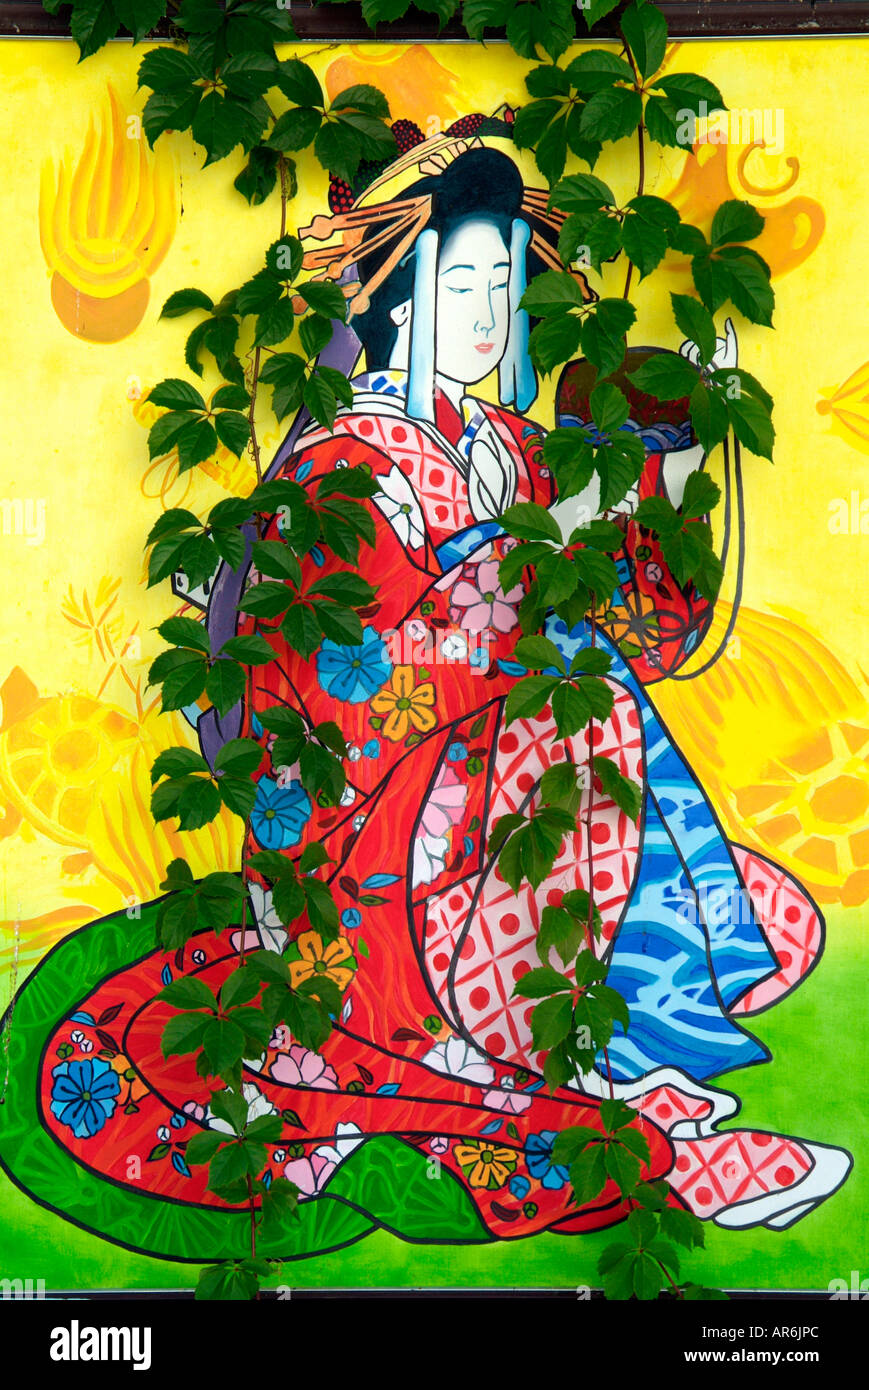 Le Japon Geisha kimono japonais peinture murale de croissance de plus de révéler révélant zone retour toile fond équilibre Banque D'Images